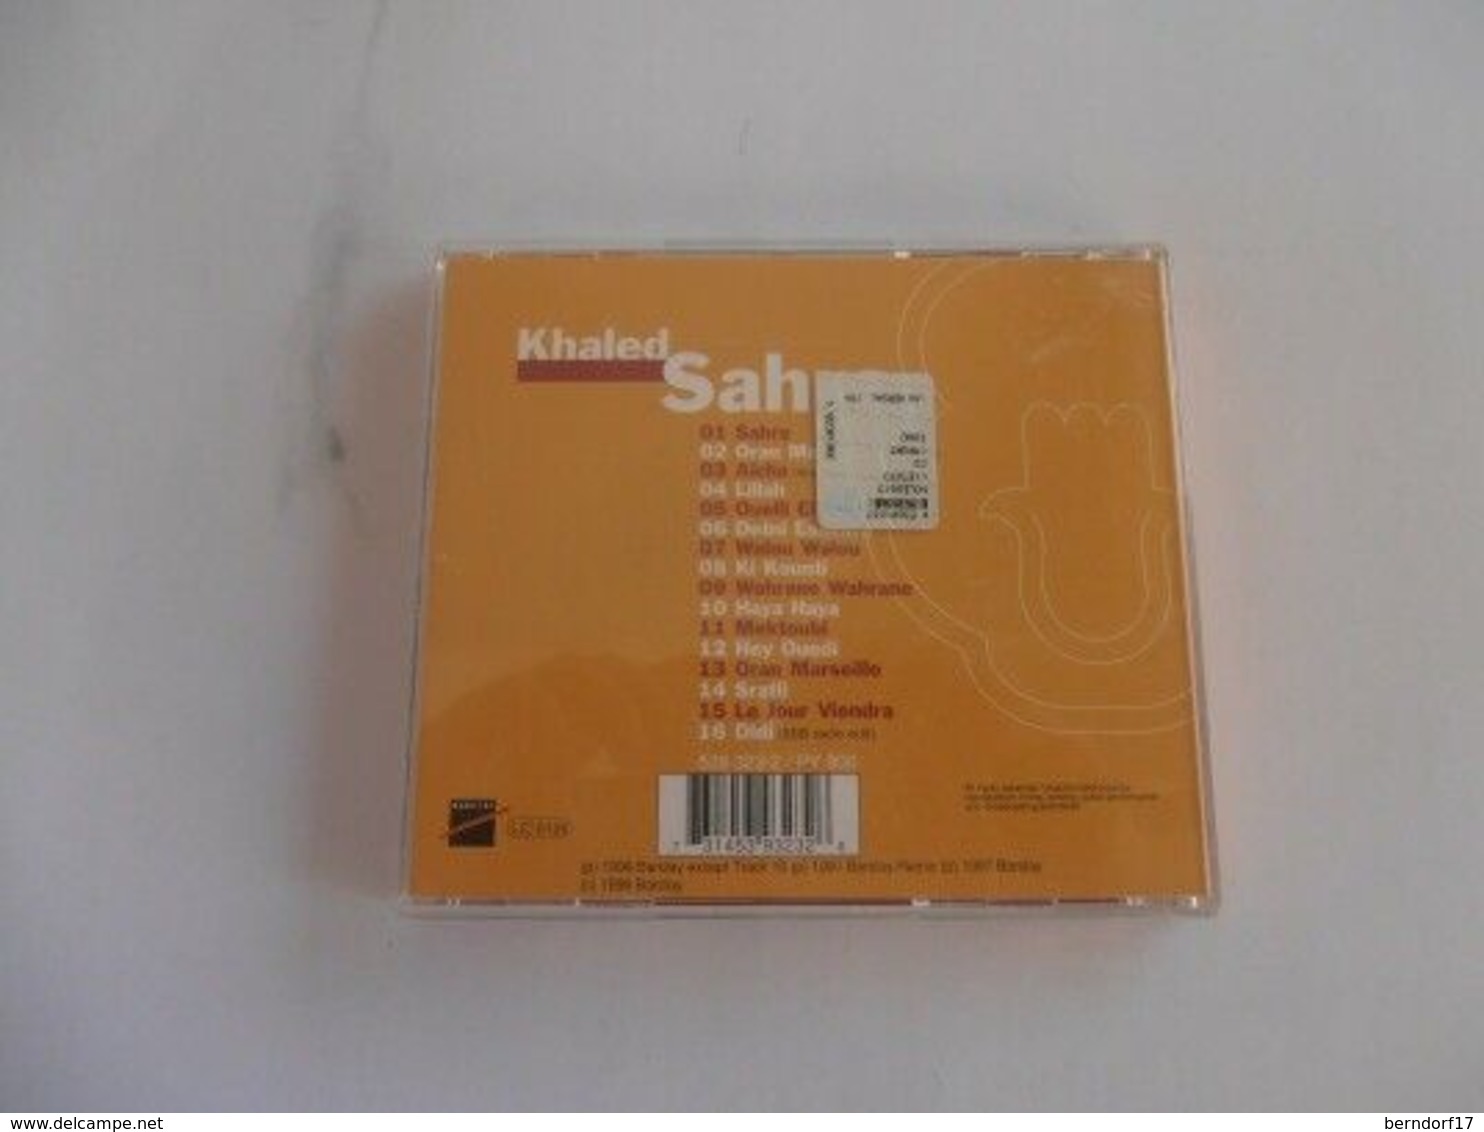 Khaled Sahra - CD - Reggae